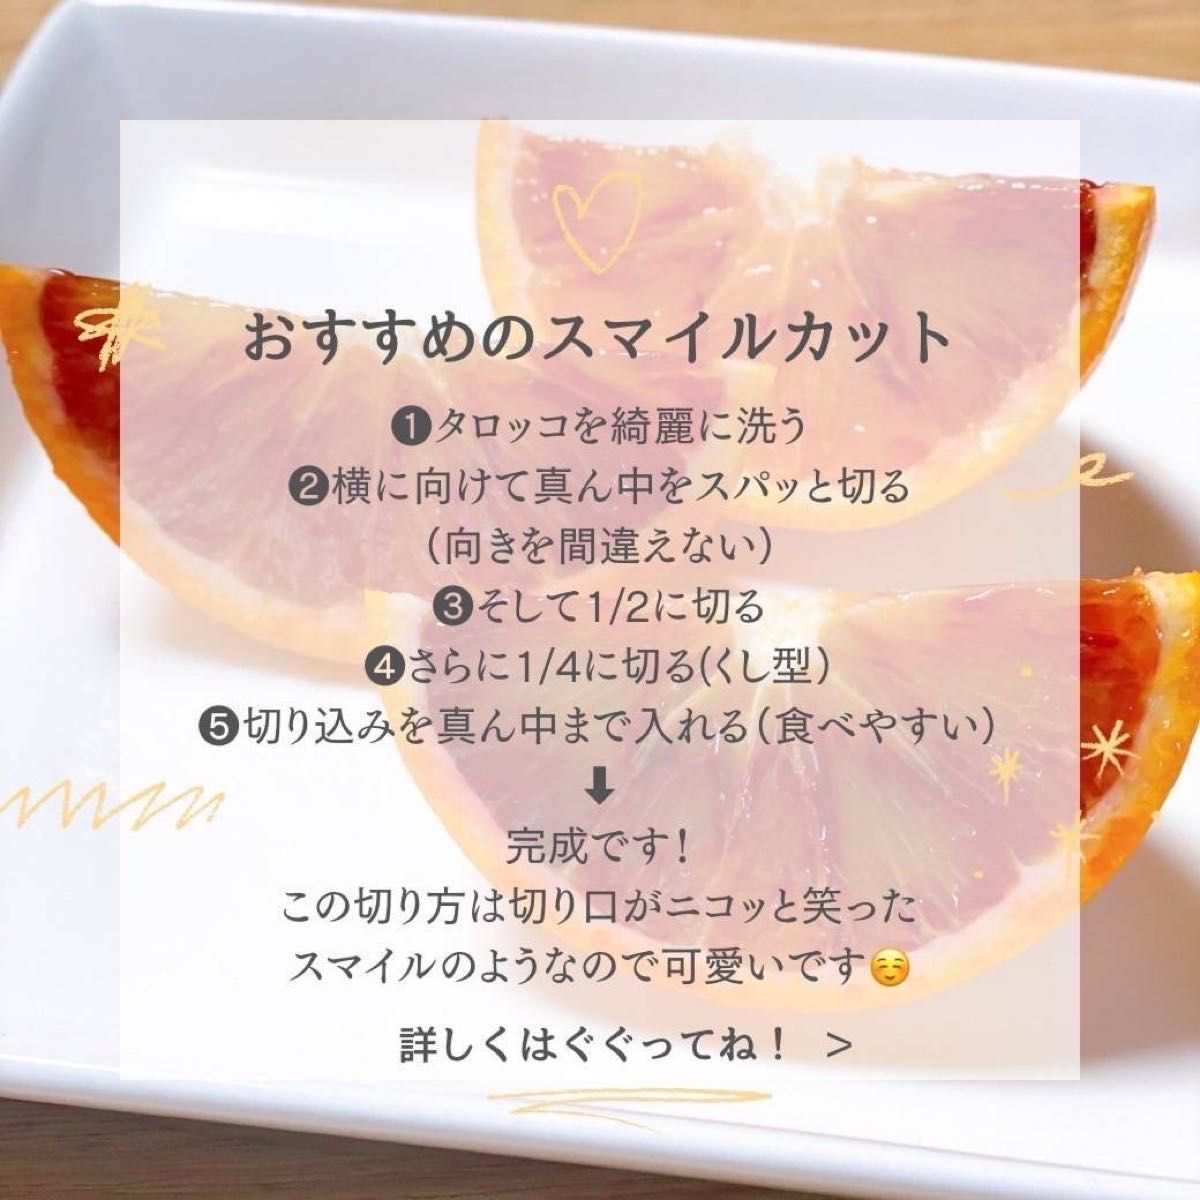 ☆もぅすぐ完売☆追熟☆MARUMI FARMの甘熟ブラッドオレンジ「タロッコ」